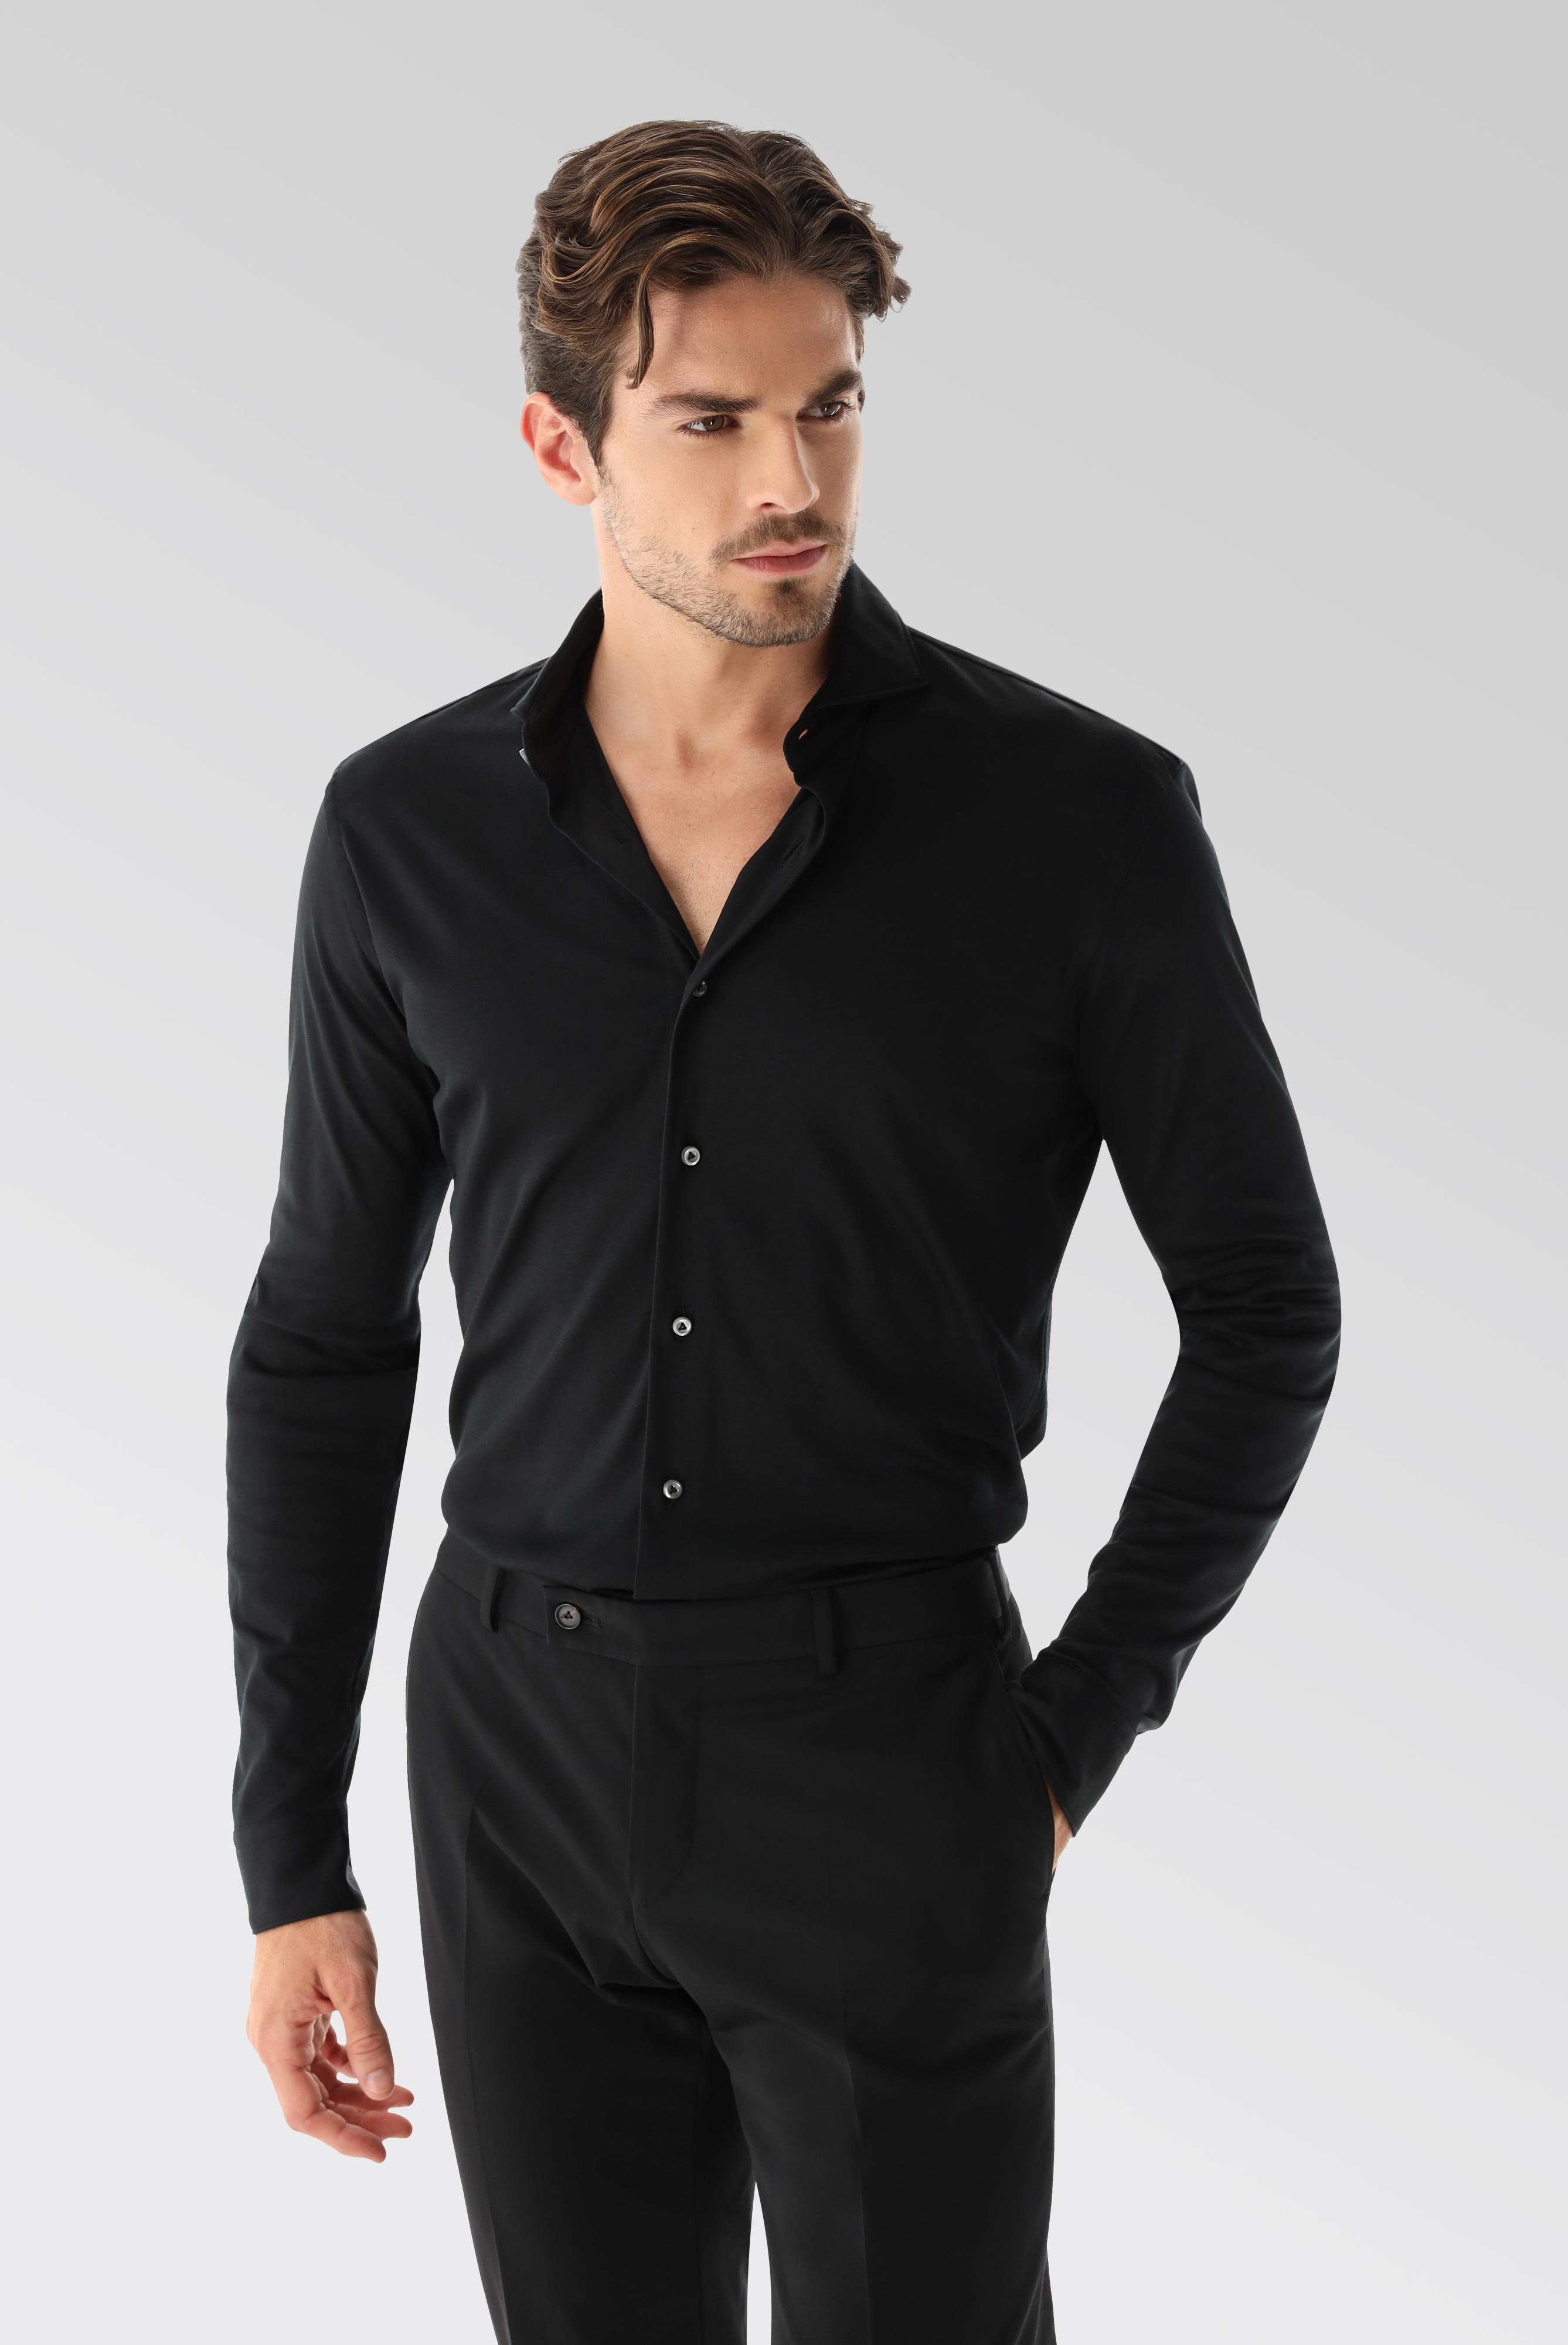 Bügelleichte Hemden+Jersey Hemd mit glänzender Optik Tailor Fit+20.1683.UC.180031.099.X3L